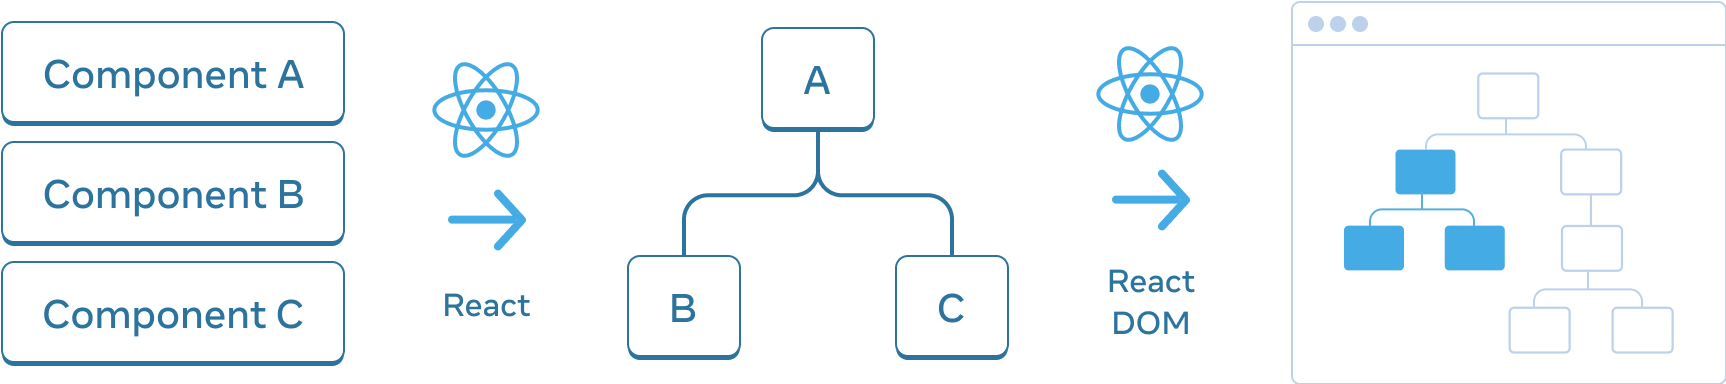 Diagrama con tres secciones dispuestas horizontalmente. En la primera sección, hay tres rectángulos apilados verticalmente, con las etiquetas 'Componente A', 'Componente B', y 'Componente C'. La transición al siguiente panel es una flecha con el logo de React en la parte superior etiquetada como 'React'. La sección central contiene un árbol de componentes, con la raíz etiquetada 'A' y dos hijos etiquetados 'B' y 'C'. La siguiente sección vuelve a ser una transición con una flecha con el logo de React en la parte superior, etiquetada como 'React'. La tercera y última sección es un wireframe de un navegador, que contiene un árbol de 8 nodos, que sólo tiene un subconjunto resaltado (indicando el subárbol de la sección central).